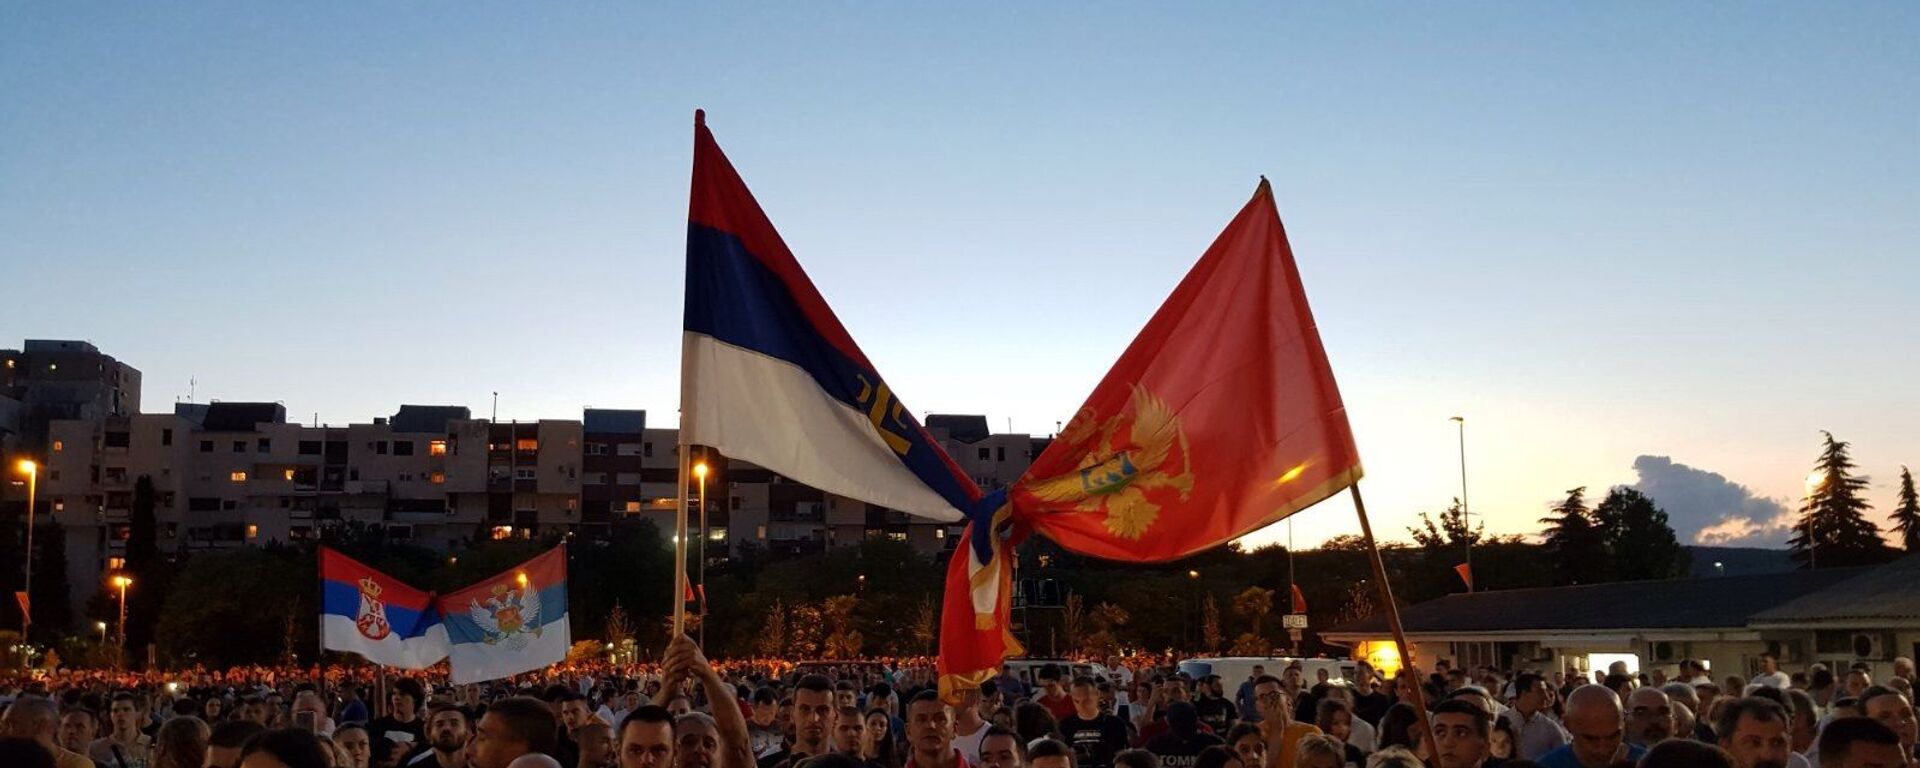 Srpska i crnogorska zastava uvezane na molebanu u Podgorici - Sputnik Srbija, 1920, 02.11.2021